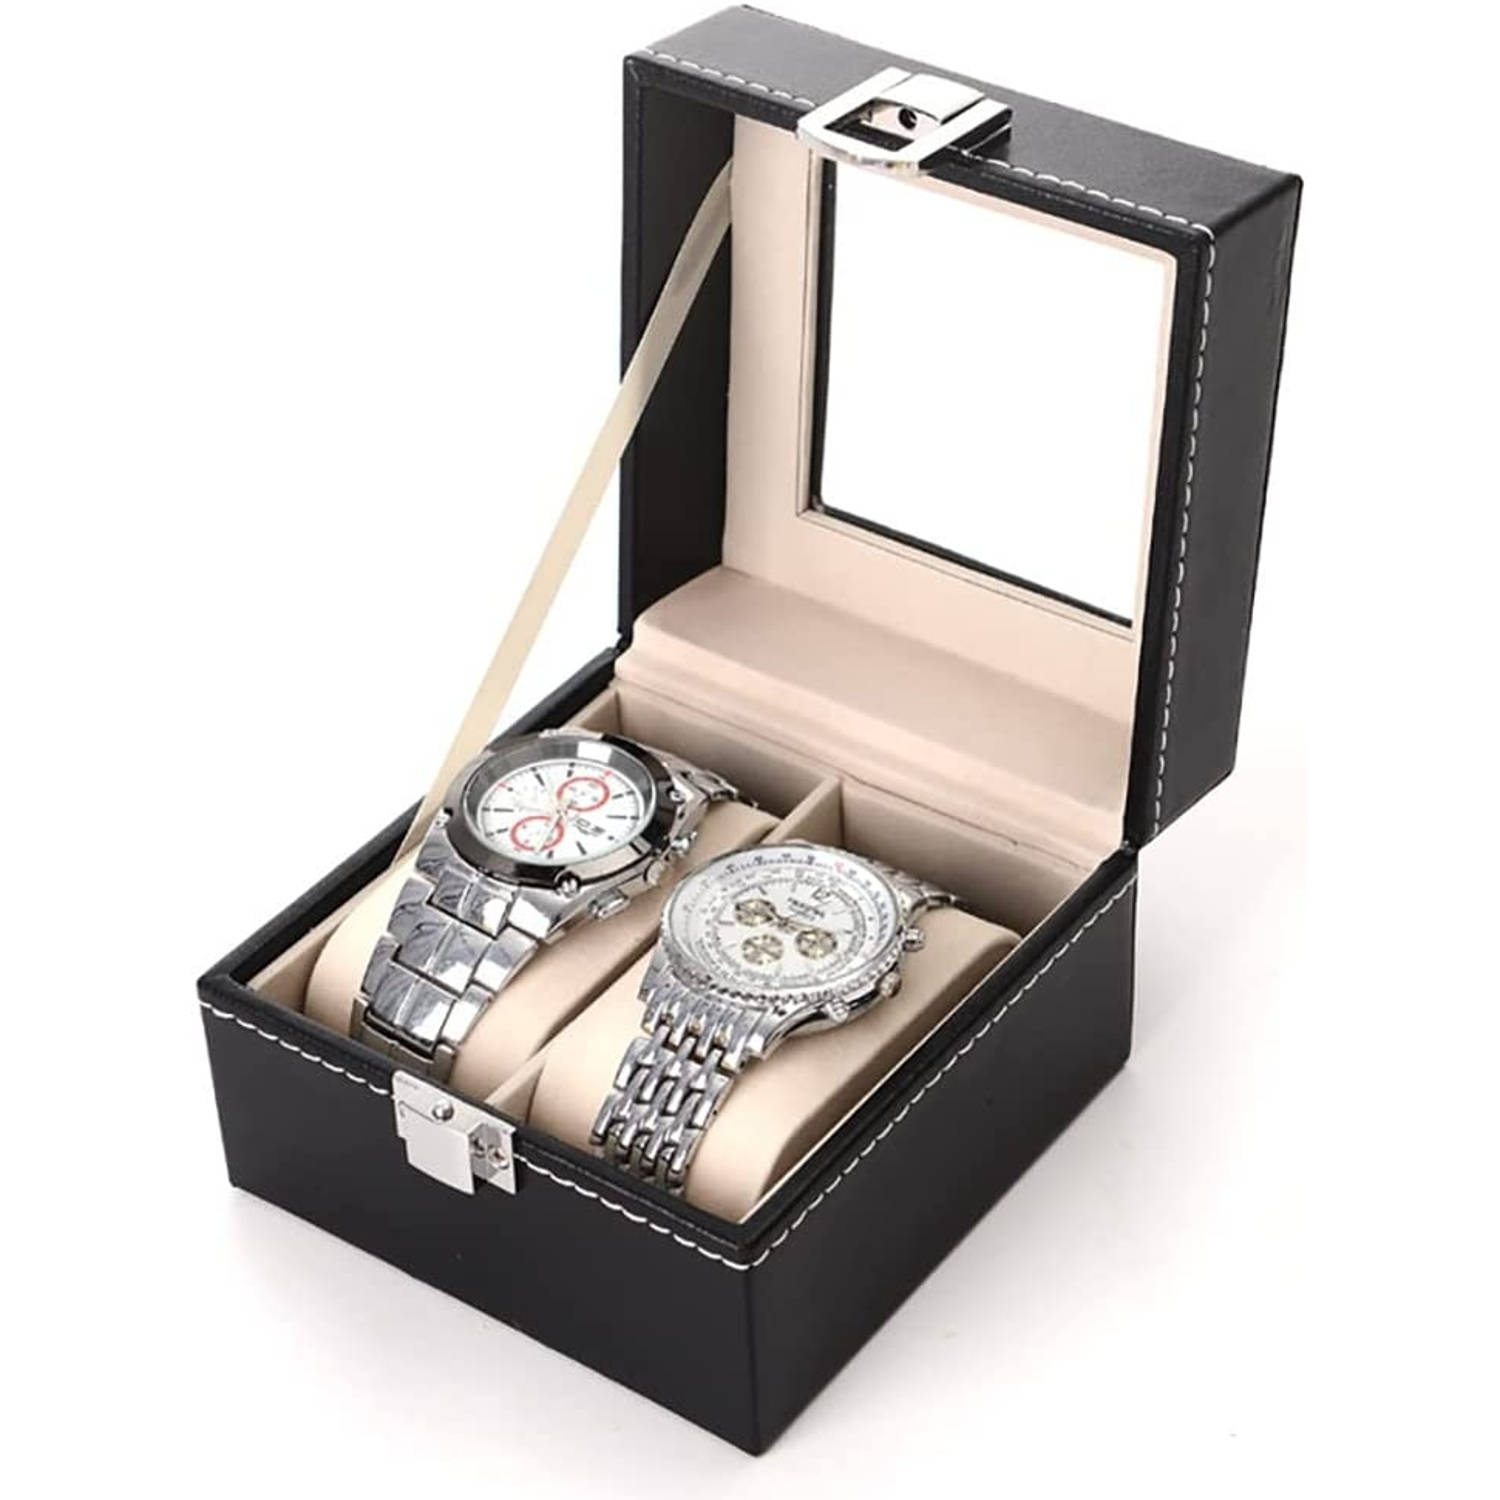 Lowander Horlogebox Horlogedoos Voor Heren & Dames 2 Horloges Zwart